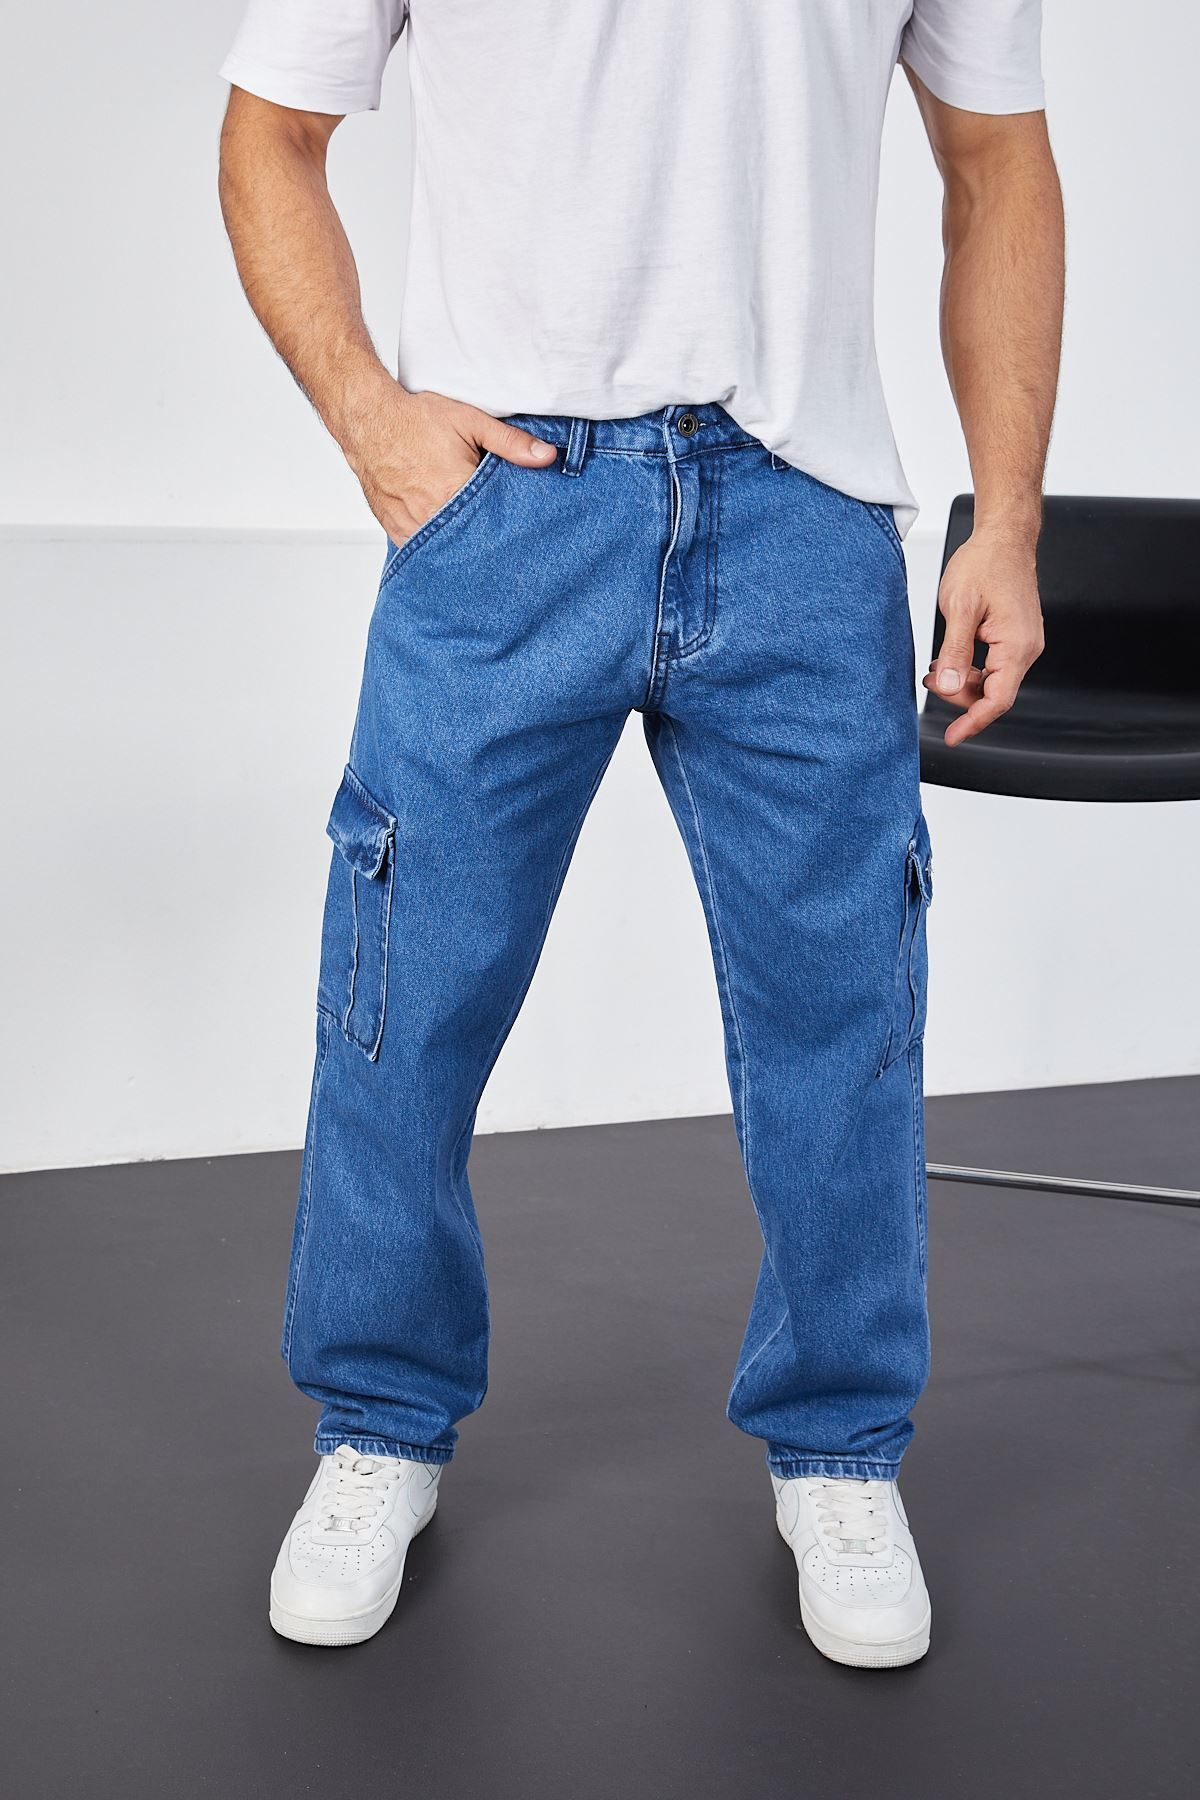 LTC Jeans Erkek Koyu Mavi Baggy Fit Rahat Kalıp Kargo Pantolon